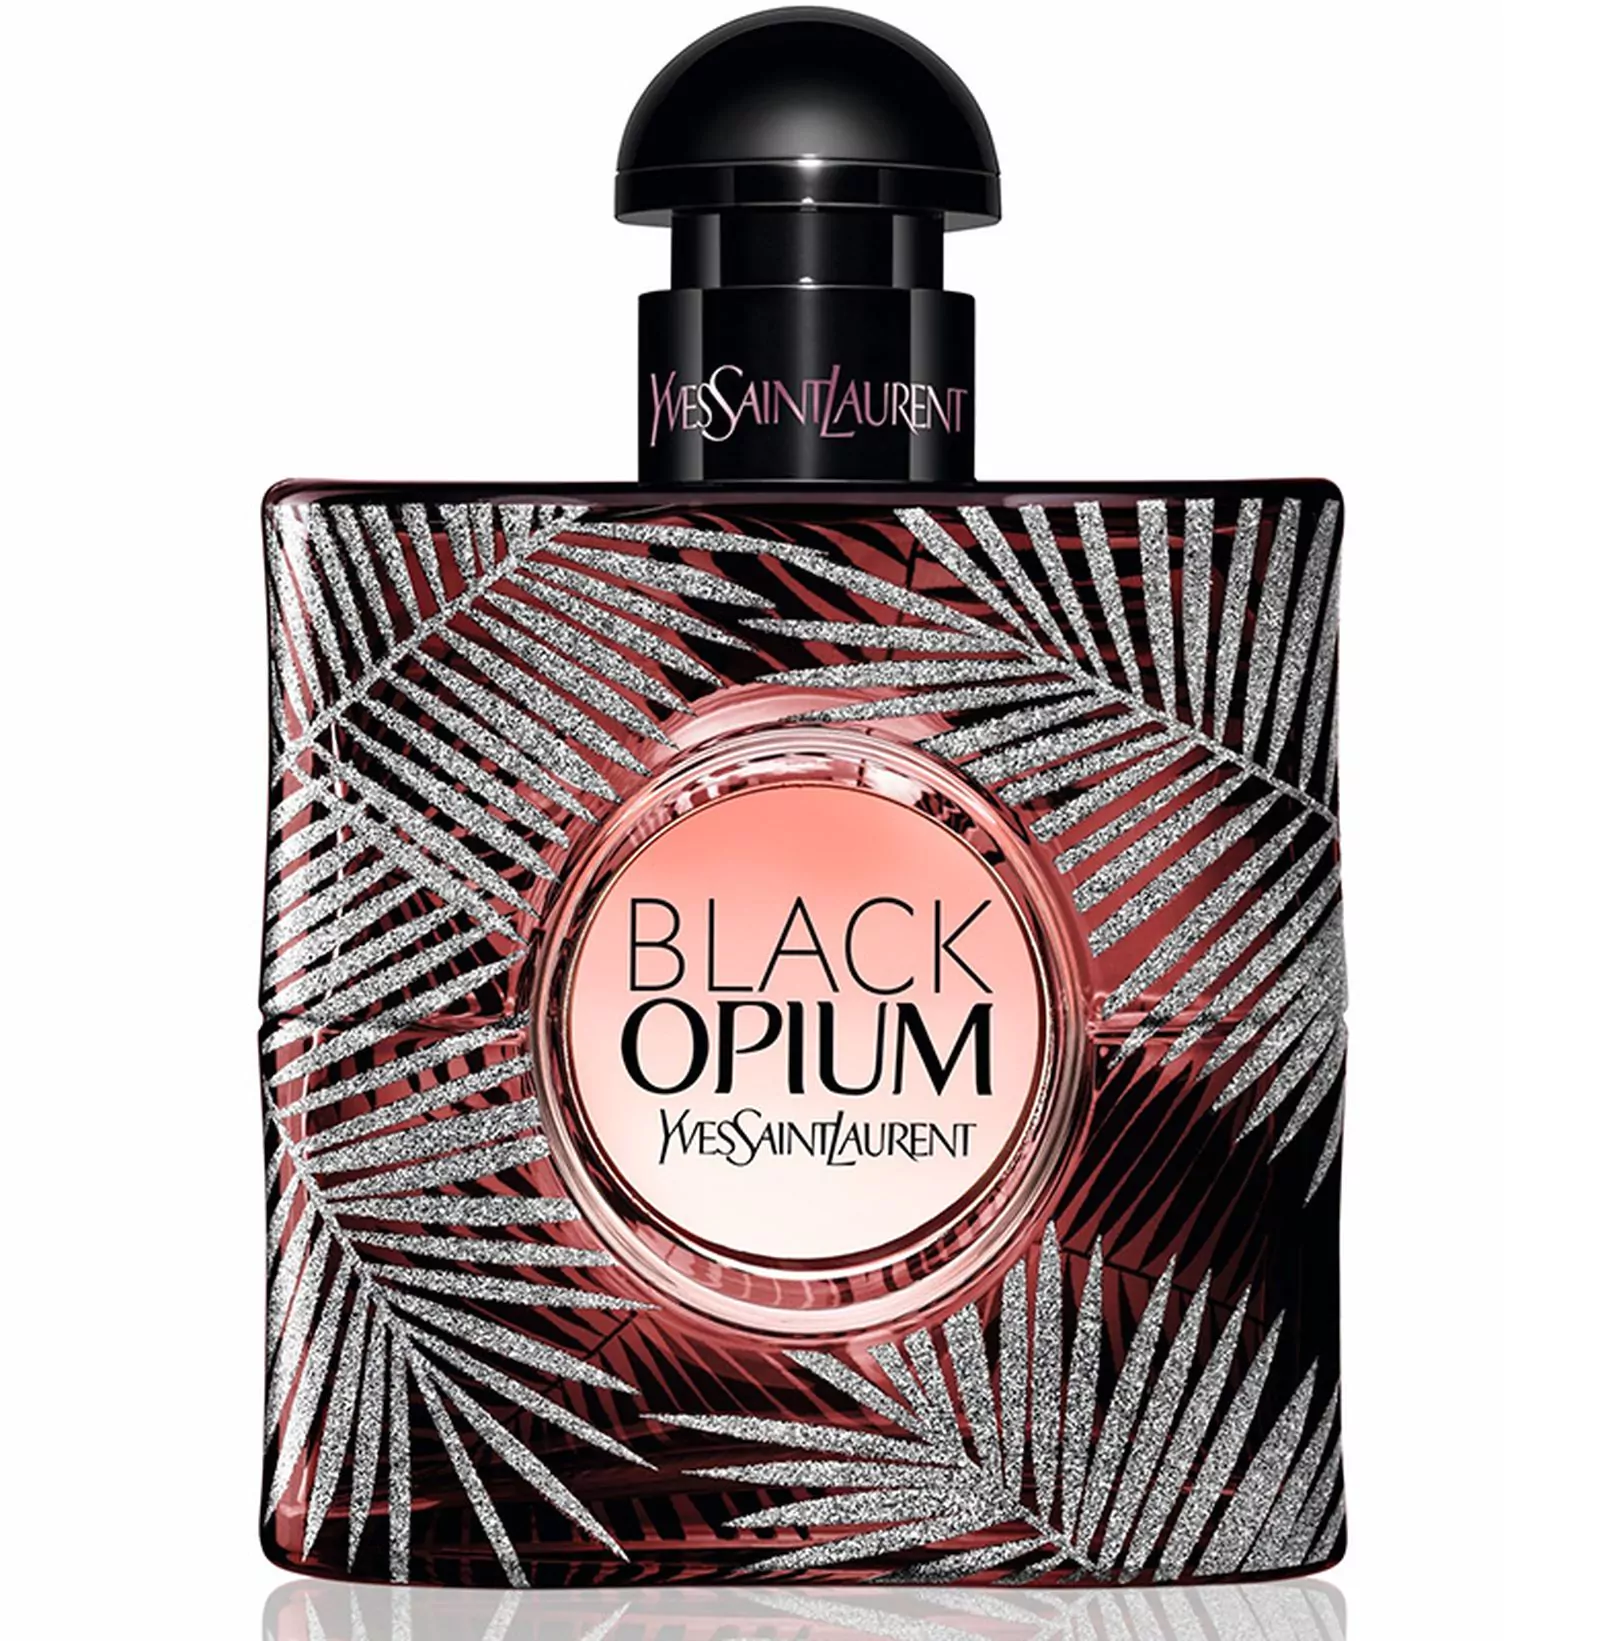 Коллекционное издание и мини-формат культового аромата Black Opium от YSL, фото 1